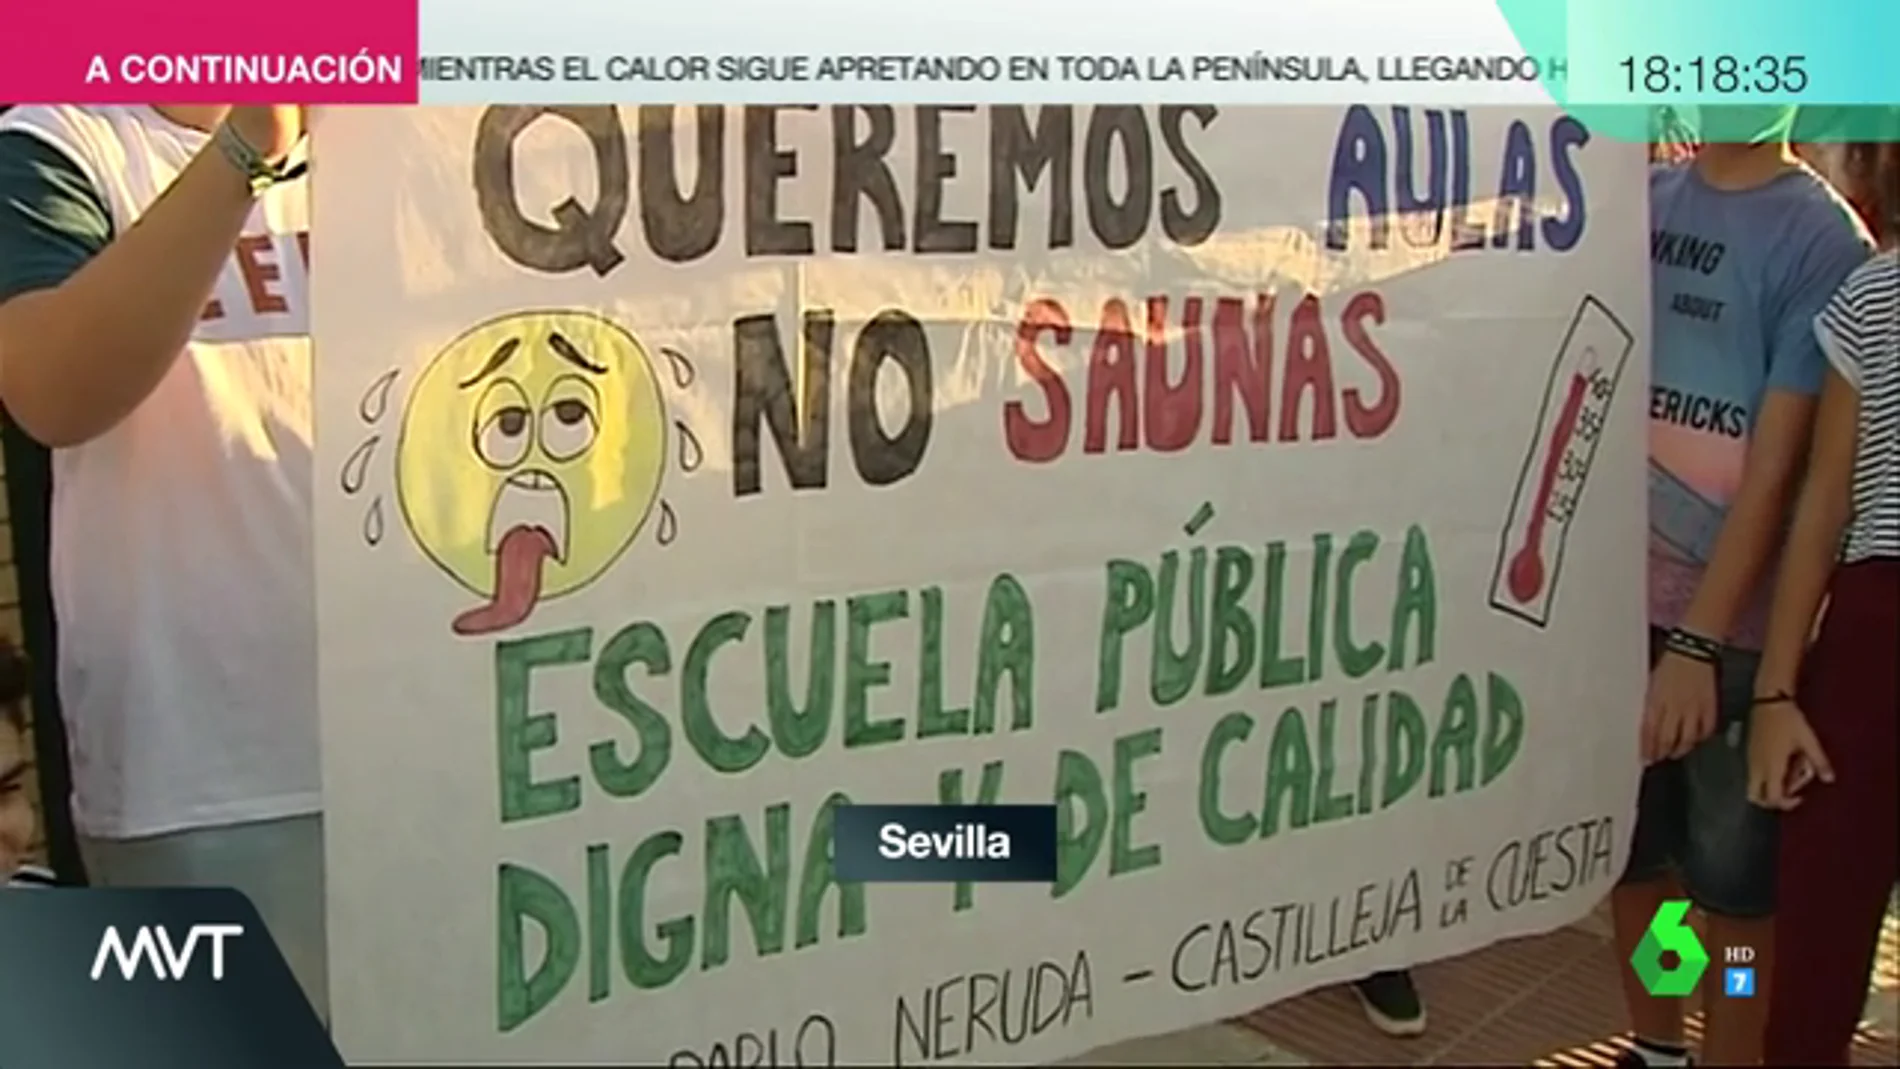 "Queremos aulas no saunas": protestas de padres y alumnos en los colegios de Sevilla